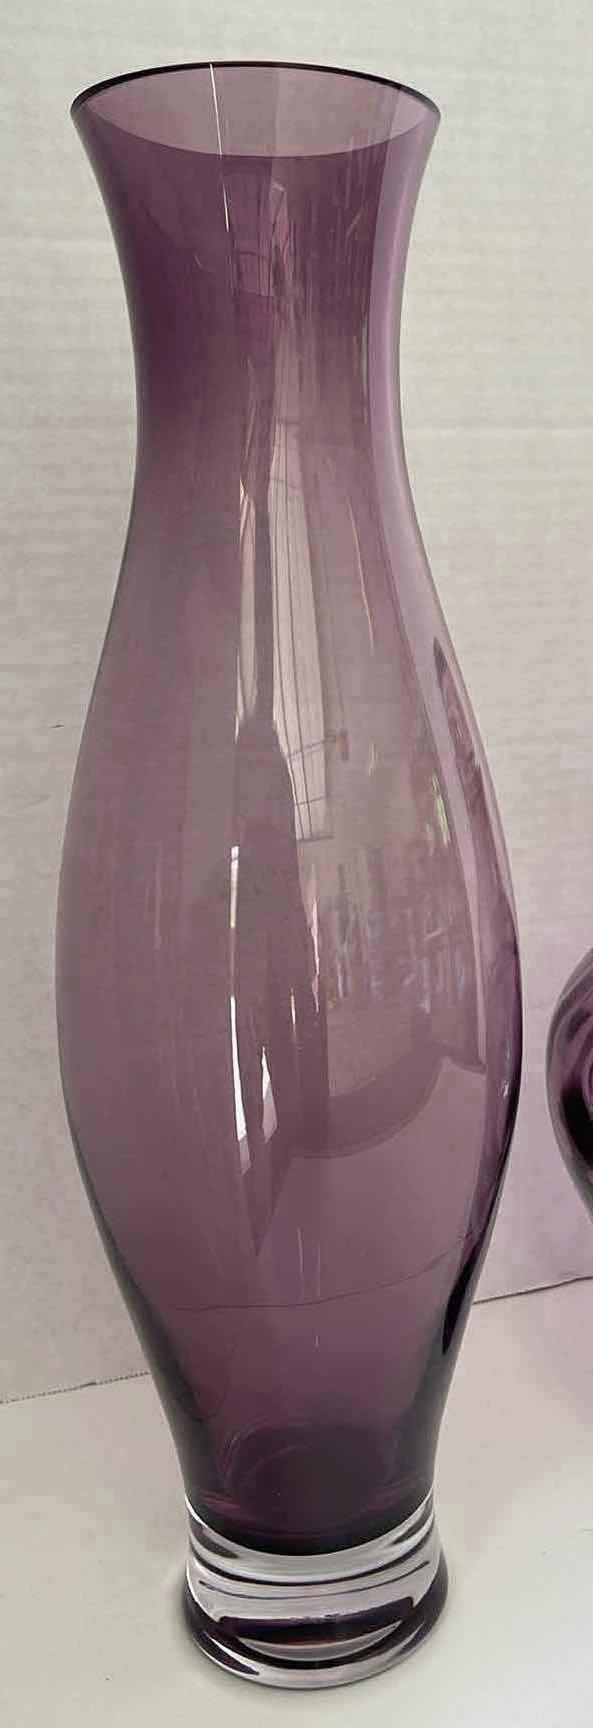 Photo 2 of PURPLE DECORATIVE GLASS VASES (3)